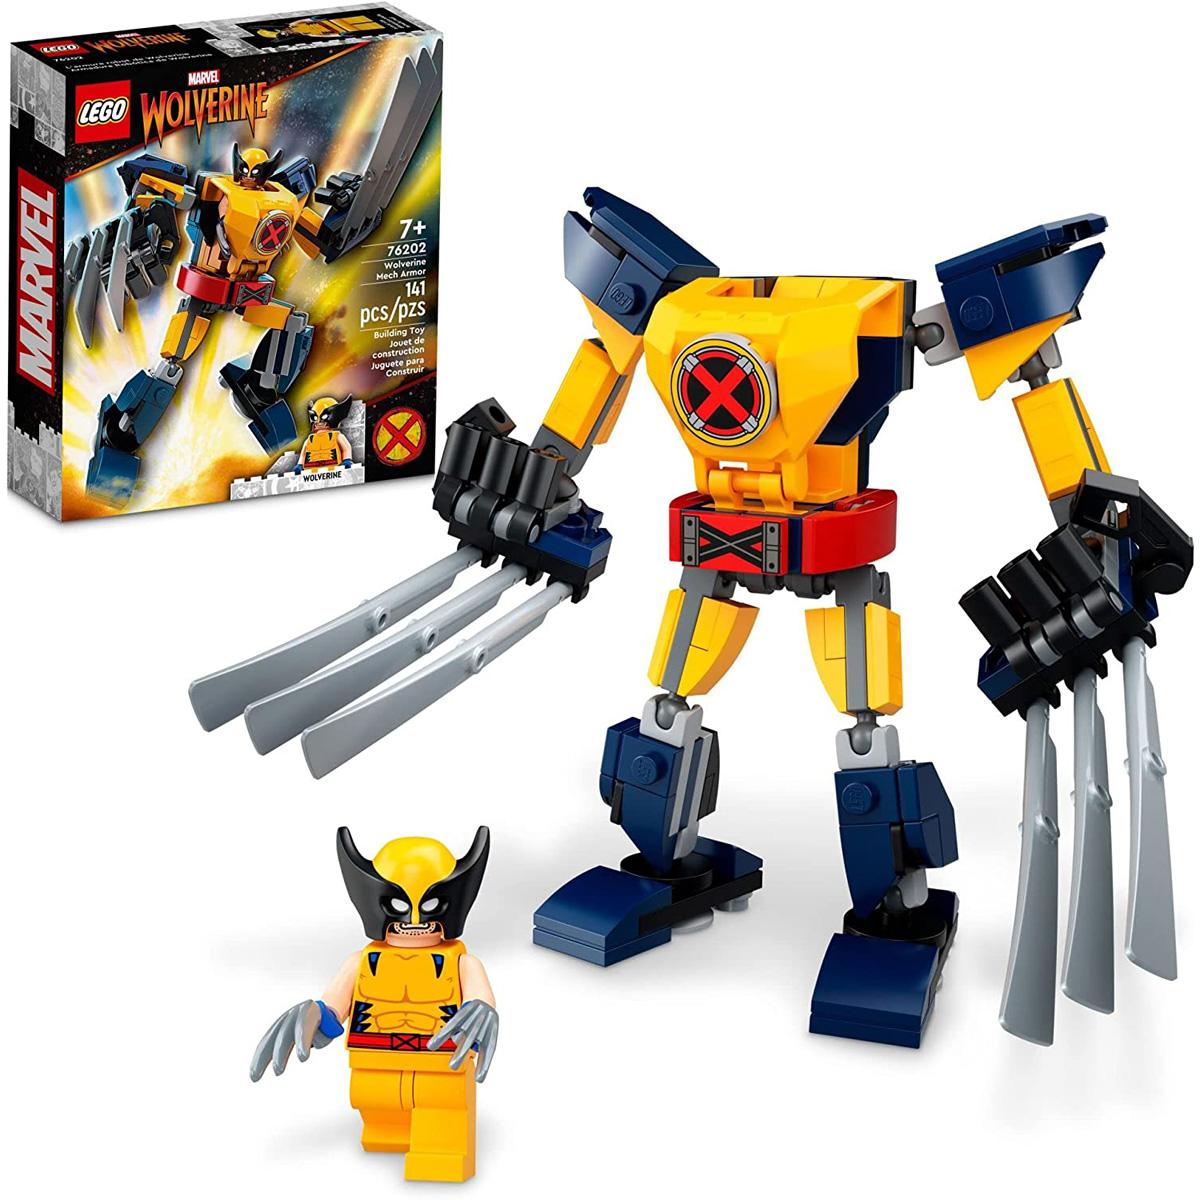 LEGO Marvel Wolverine Mech Armor Building Kit for $6.39